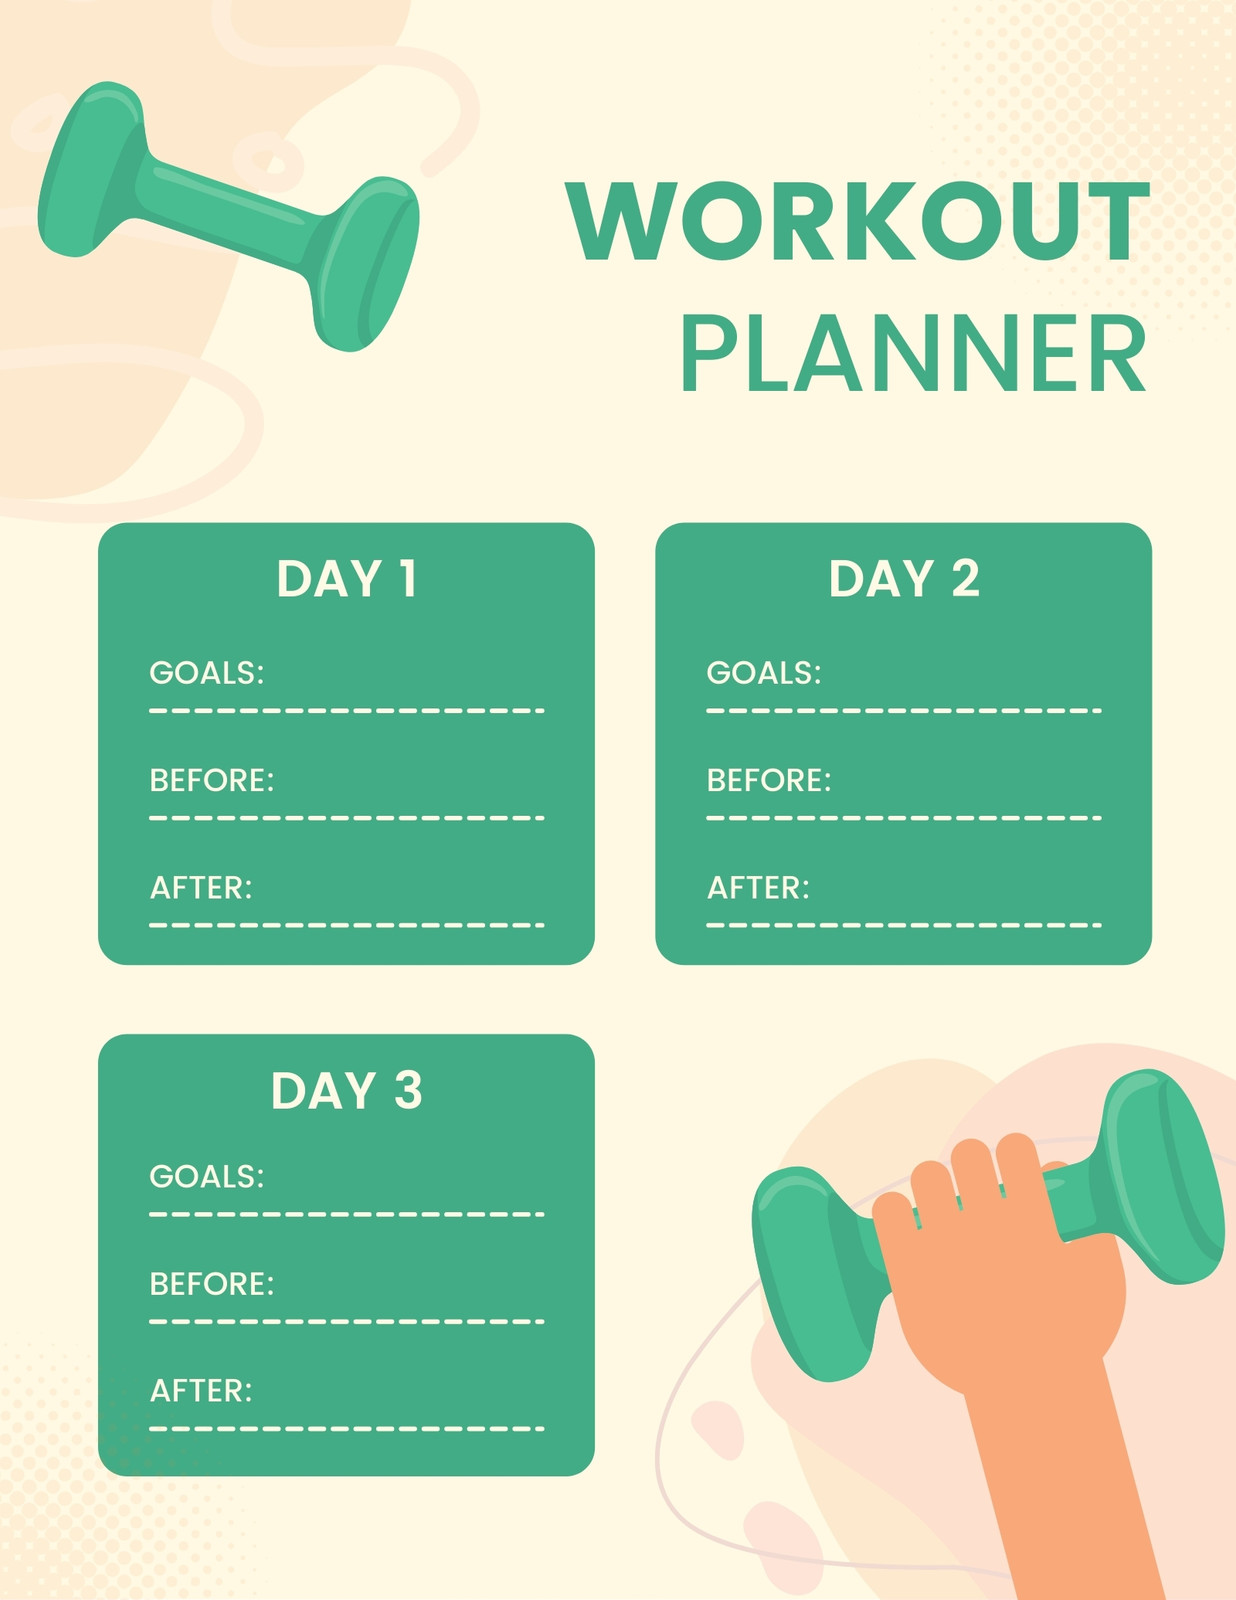 Body Goals - Workout